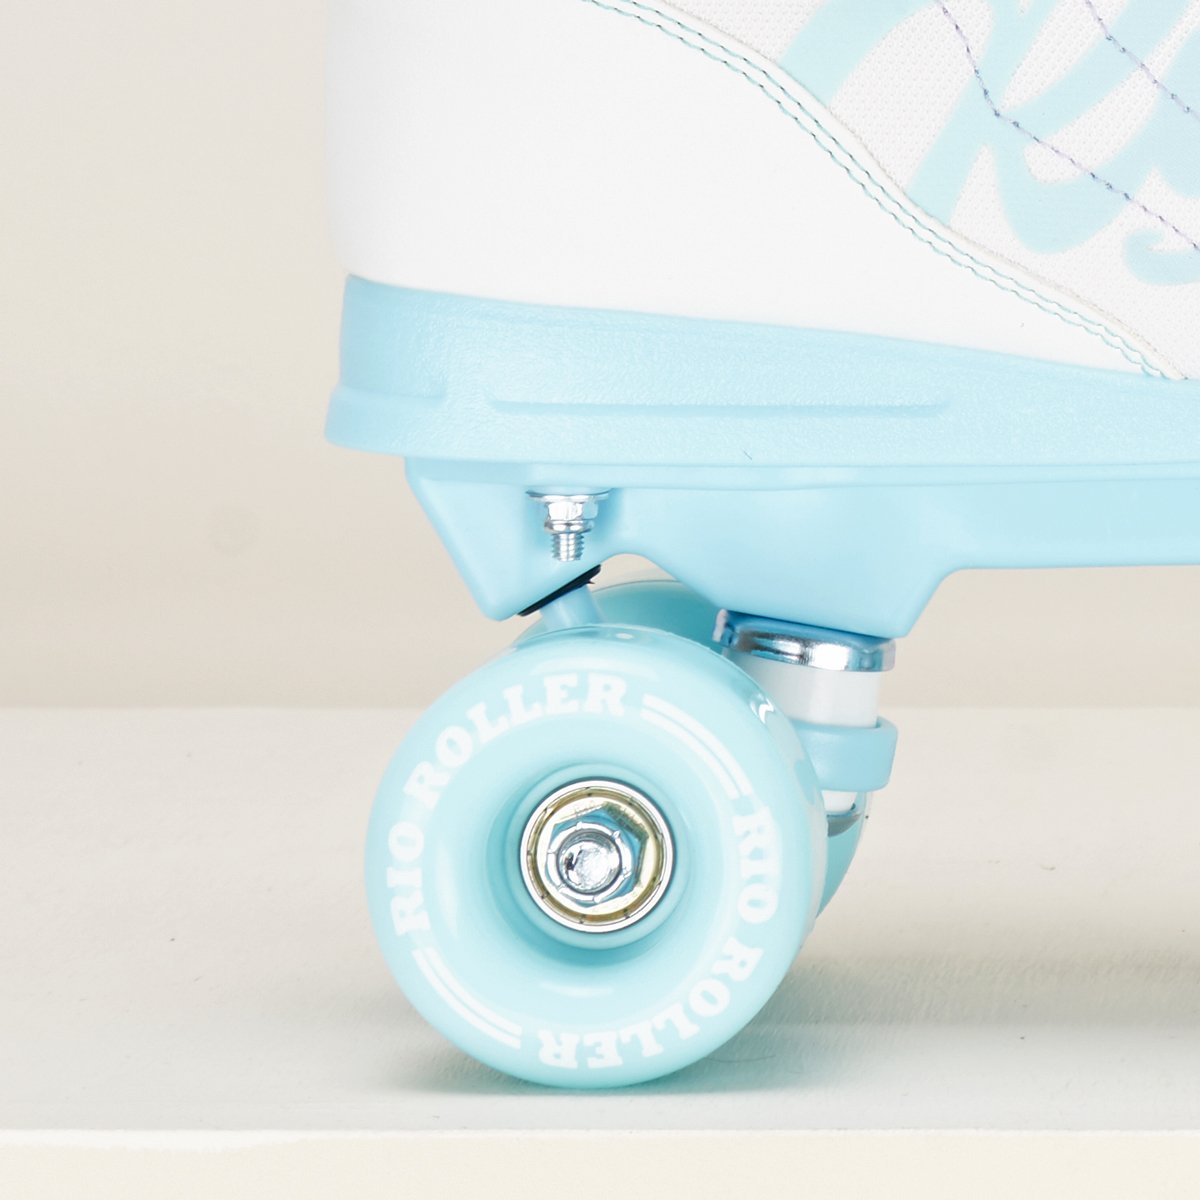 Rio Roller Lumina Quad Skates - White / Blue